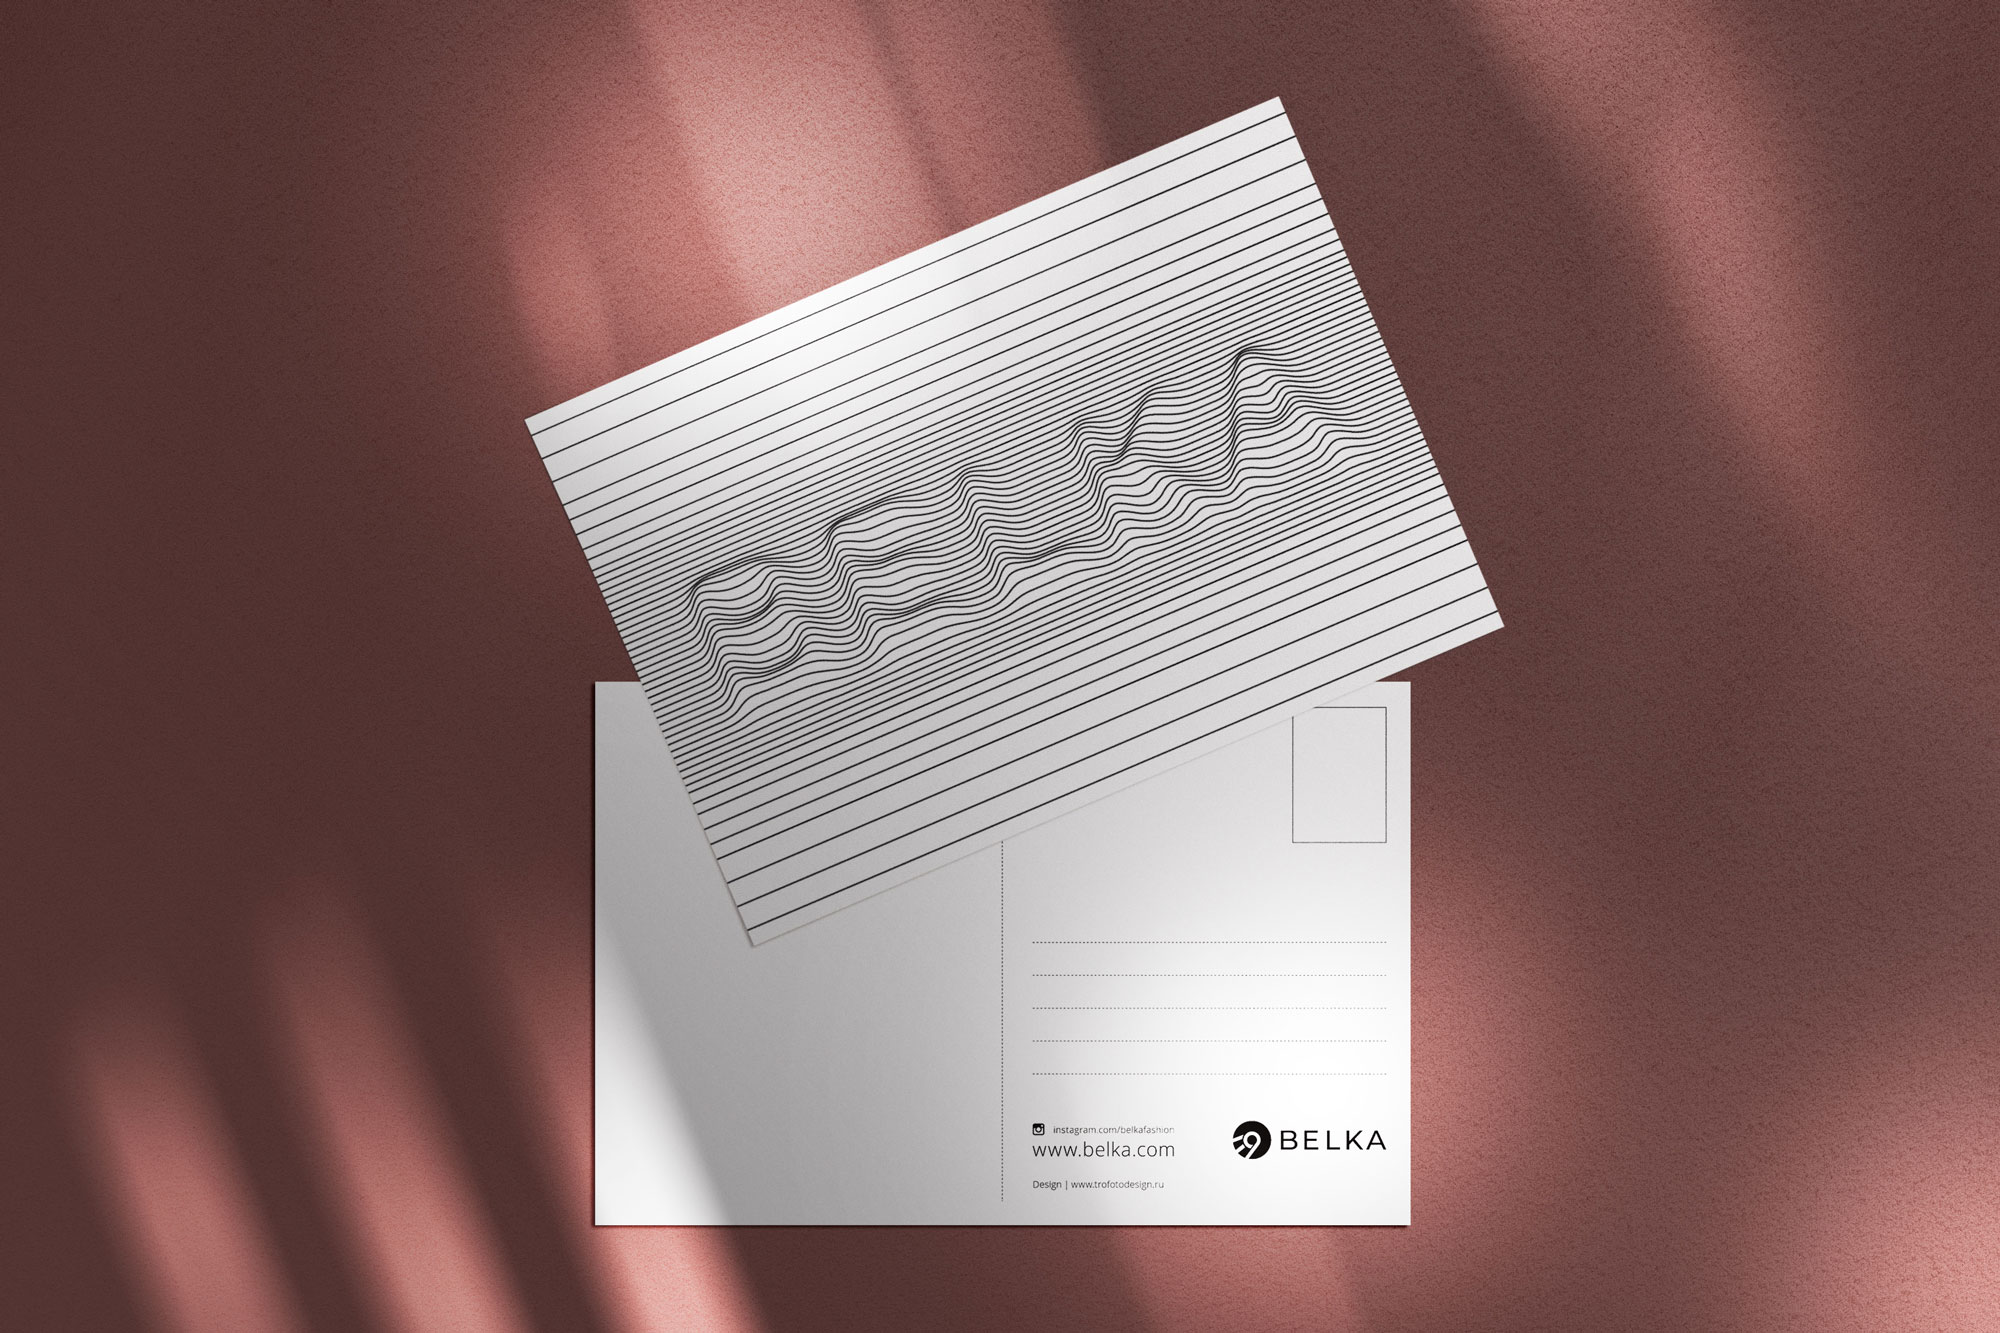 Дизайн и подготовка к печати почтовой открытки по заказу компании Belka